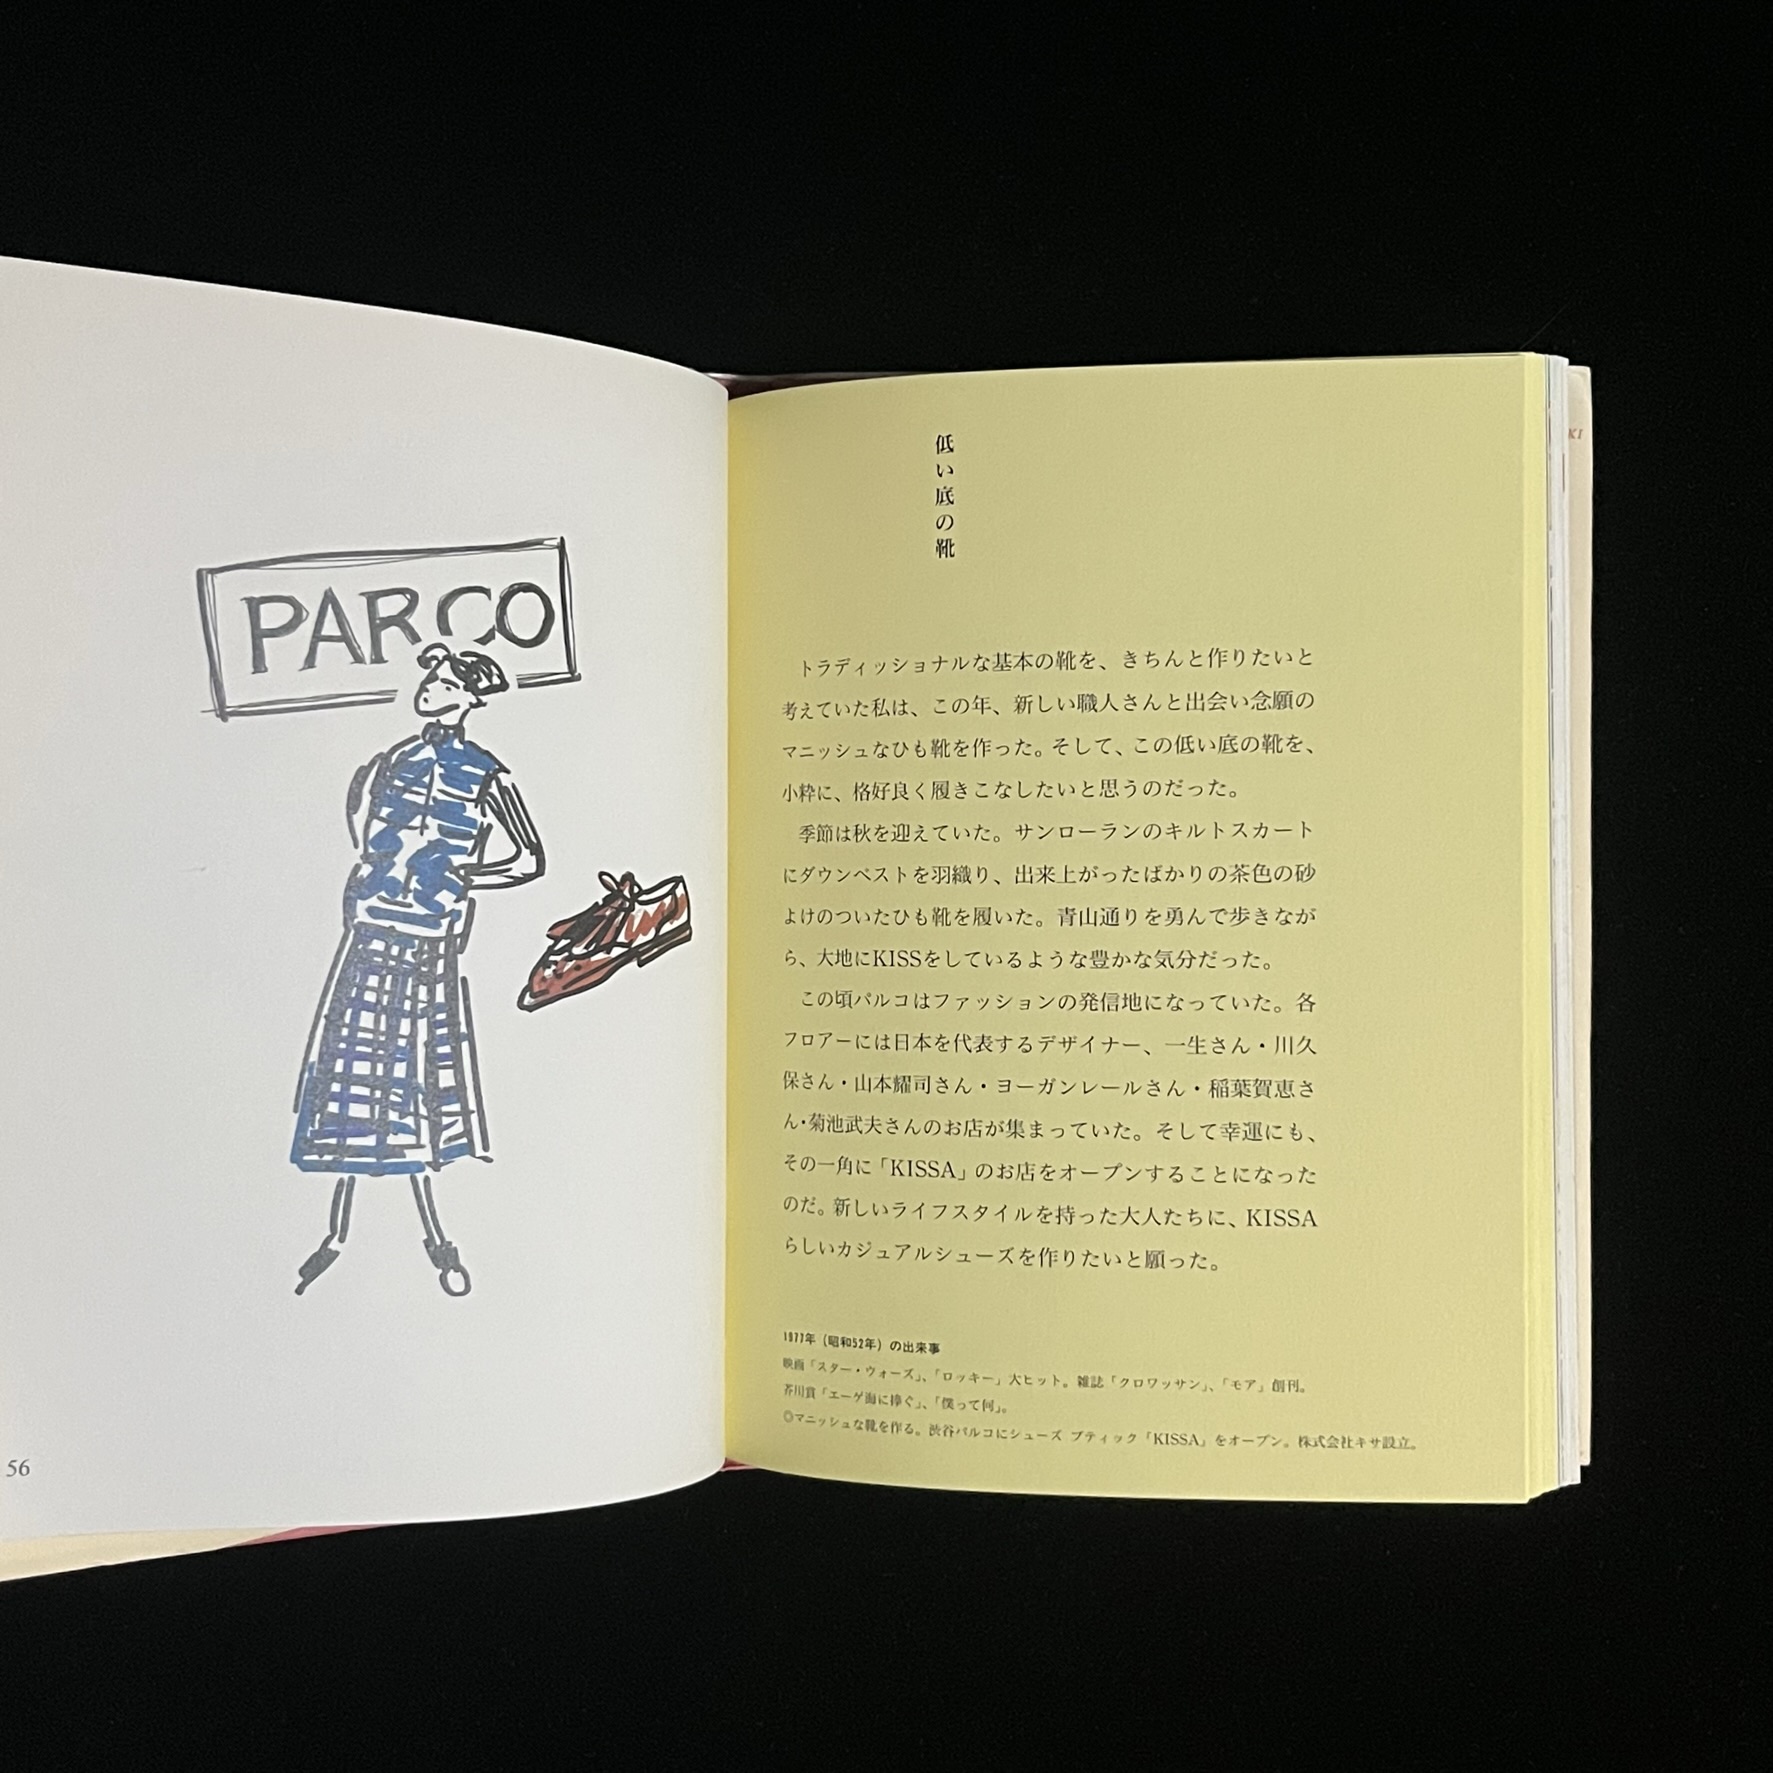 ファッションをきめた女性と靴とPARCOの文字が書かれたイラスト。PARCOの喜佐さんのお店「KISSA」をオープンできたことが書かれている